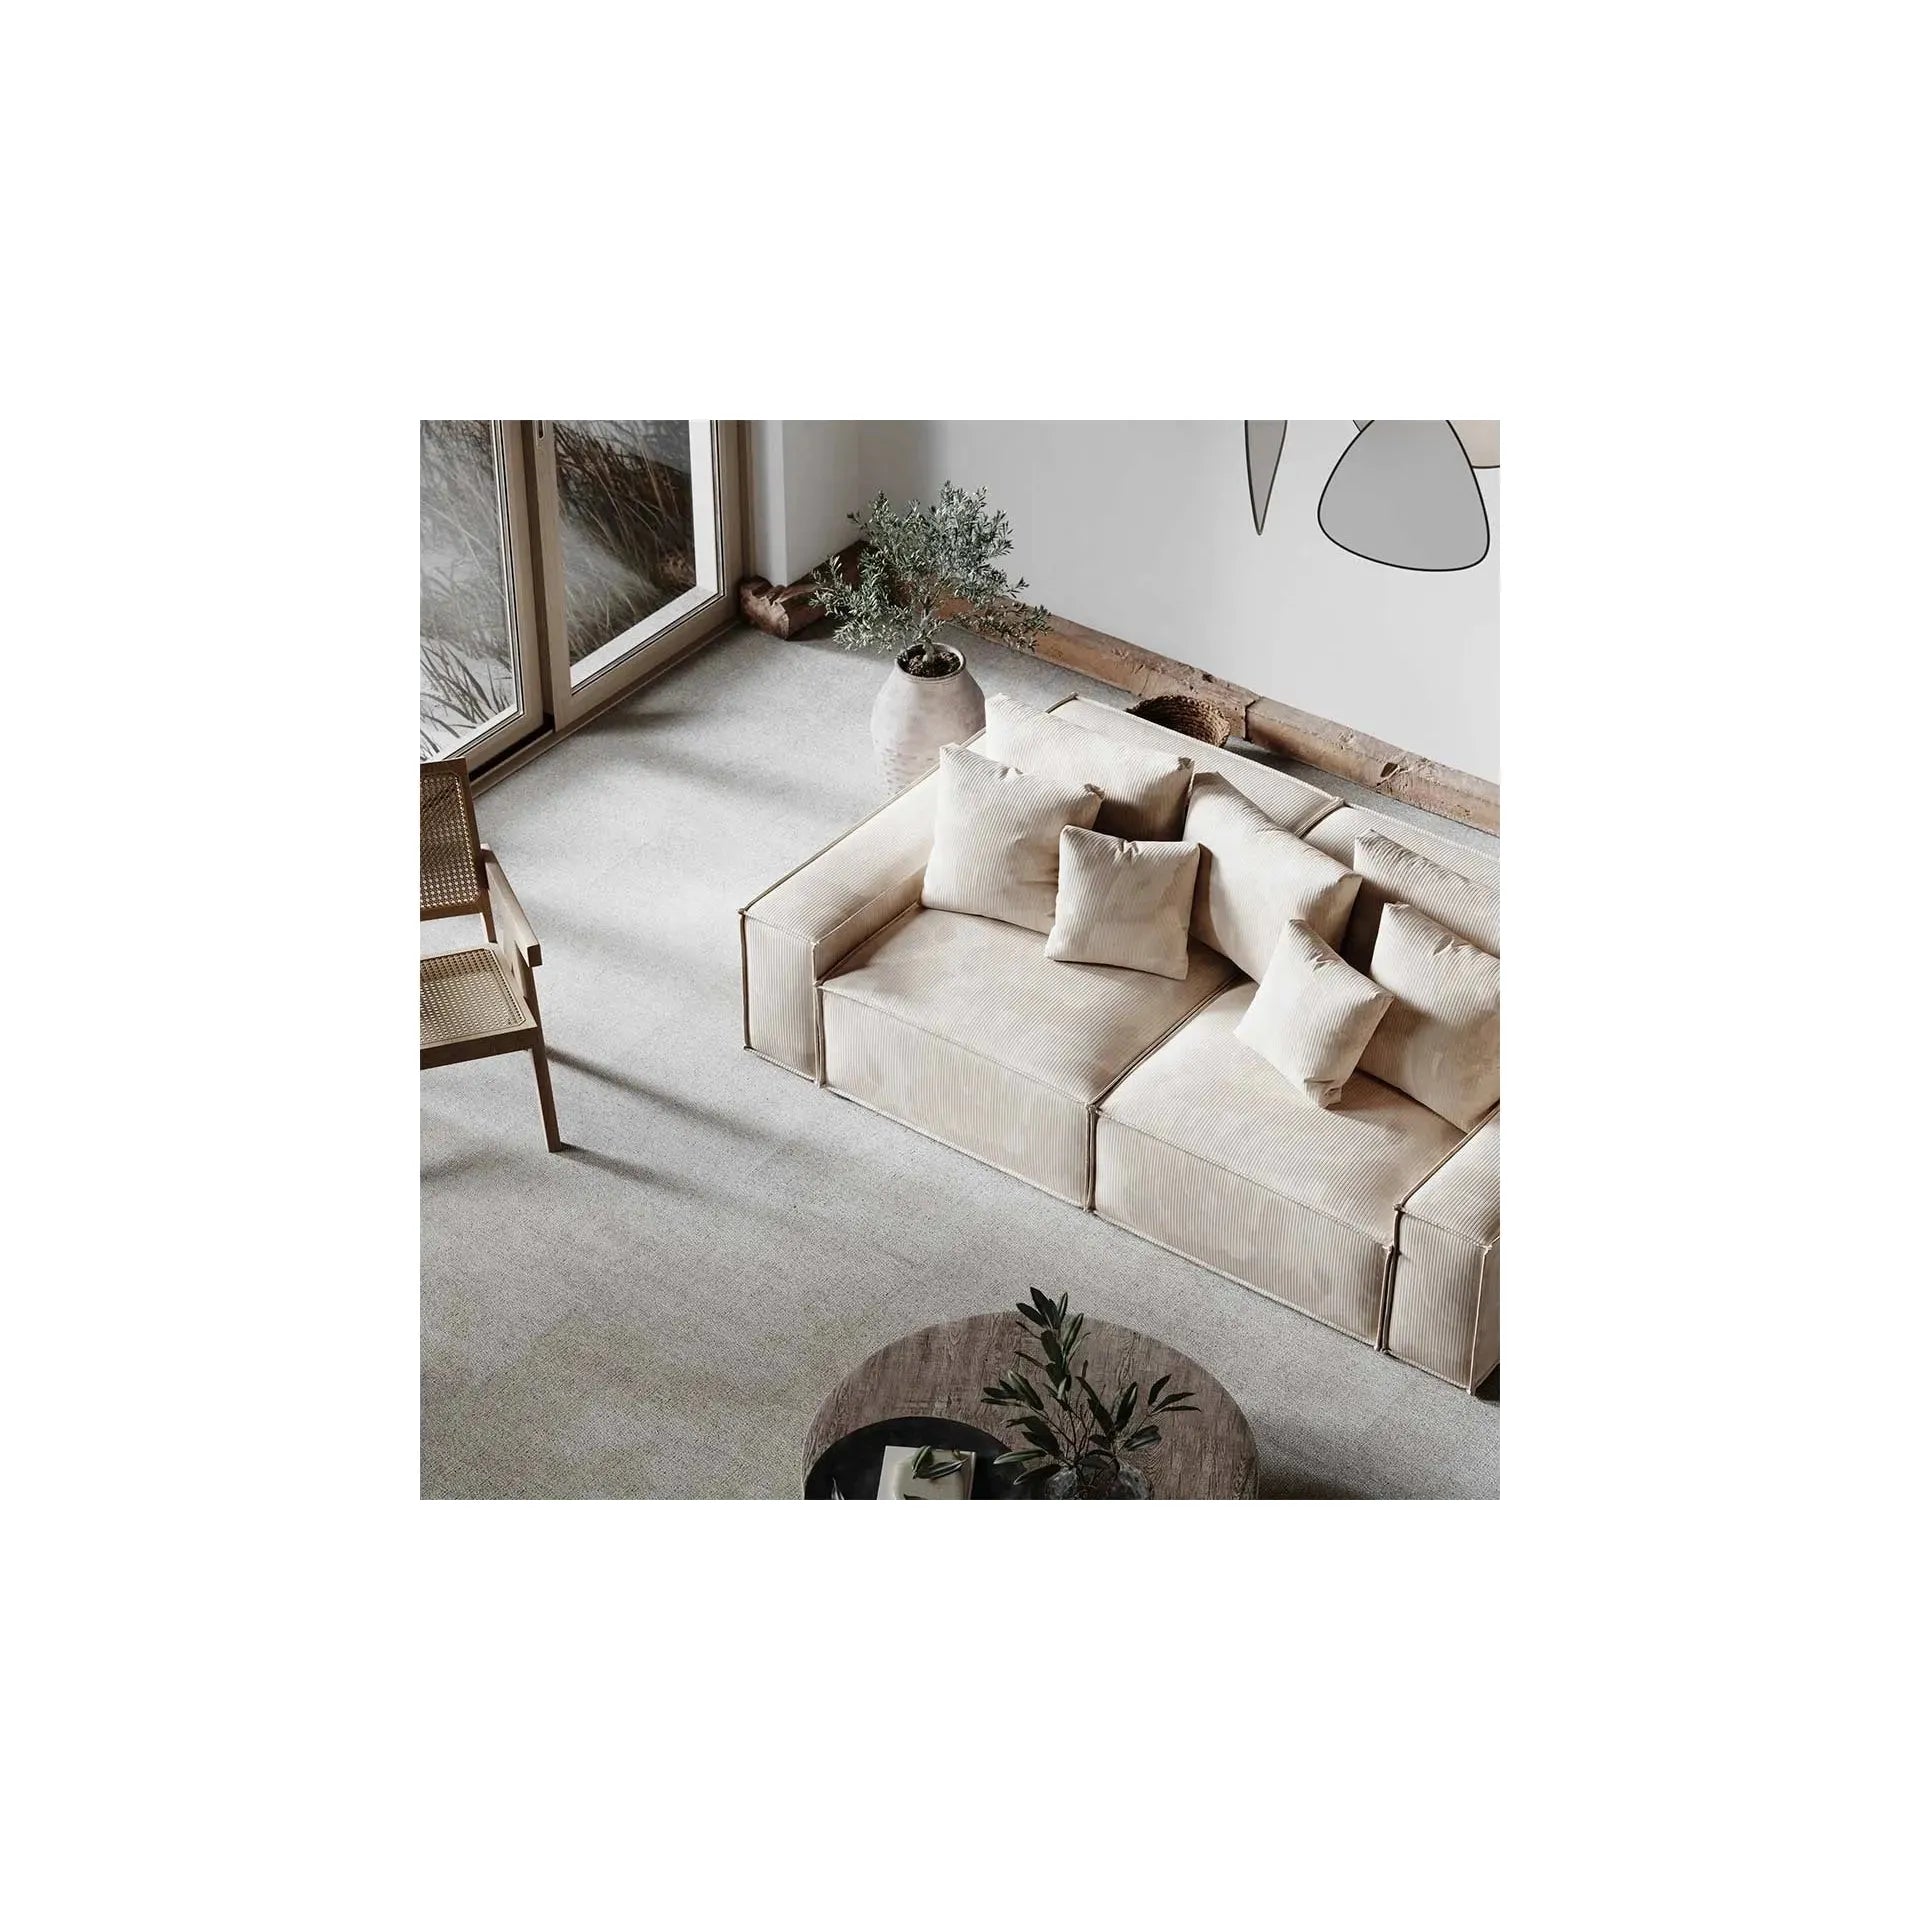 LOFT 3 vietų sofa, kreminė spalva